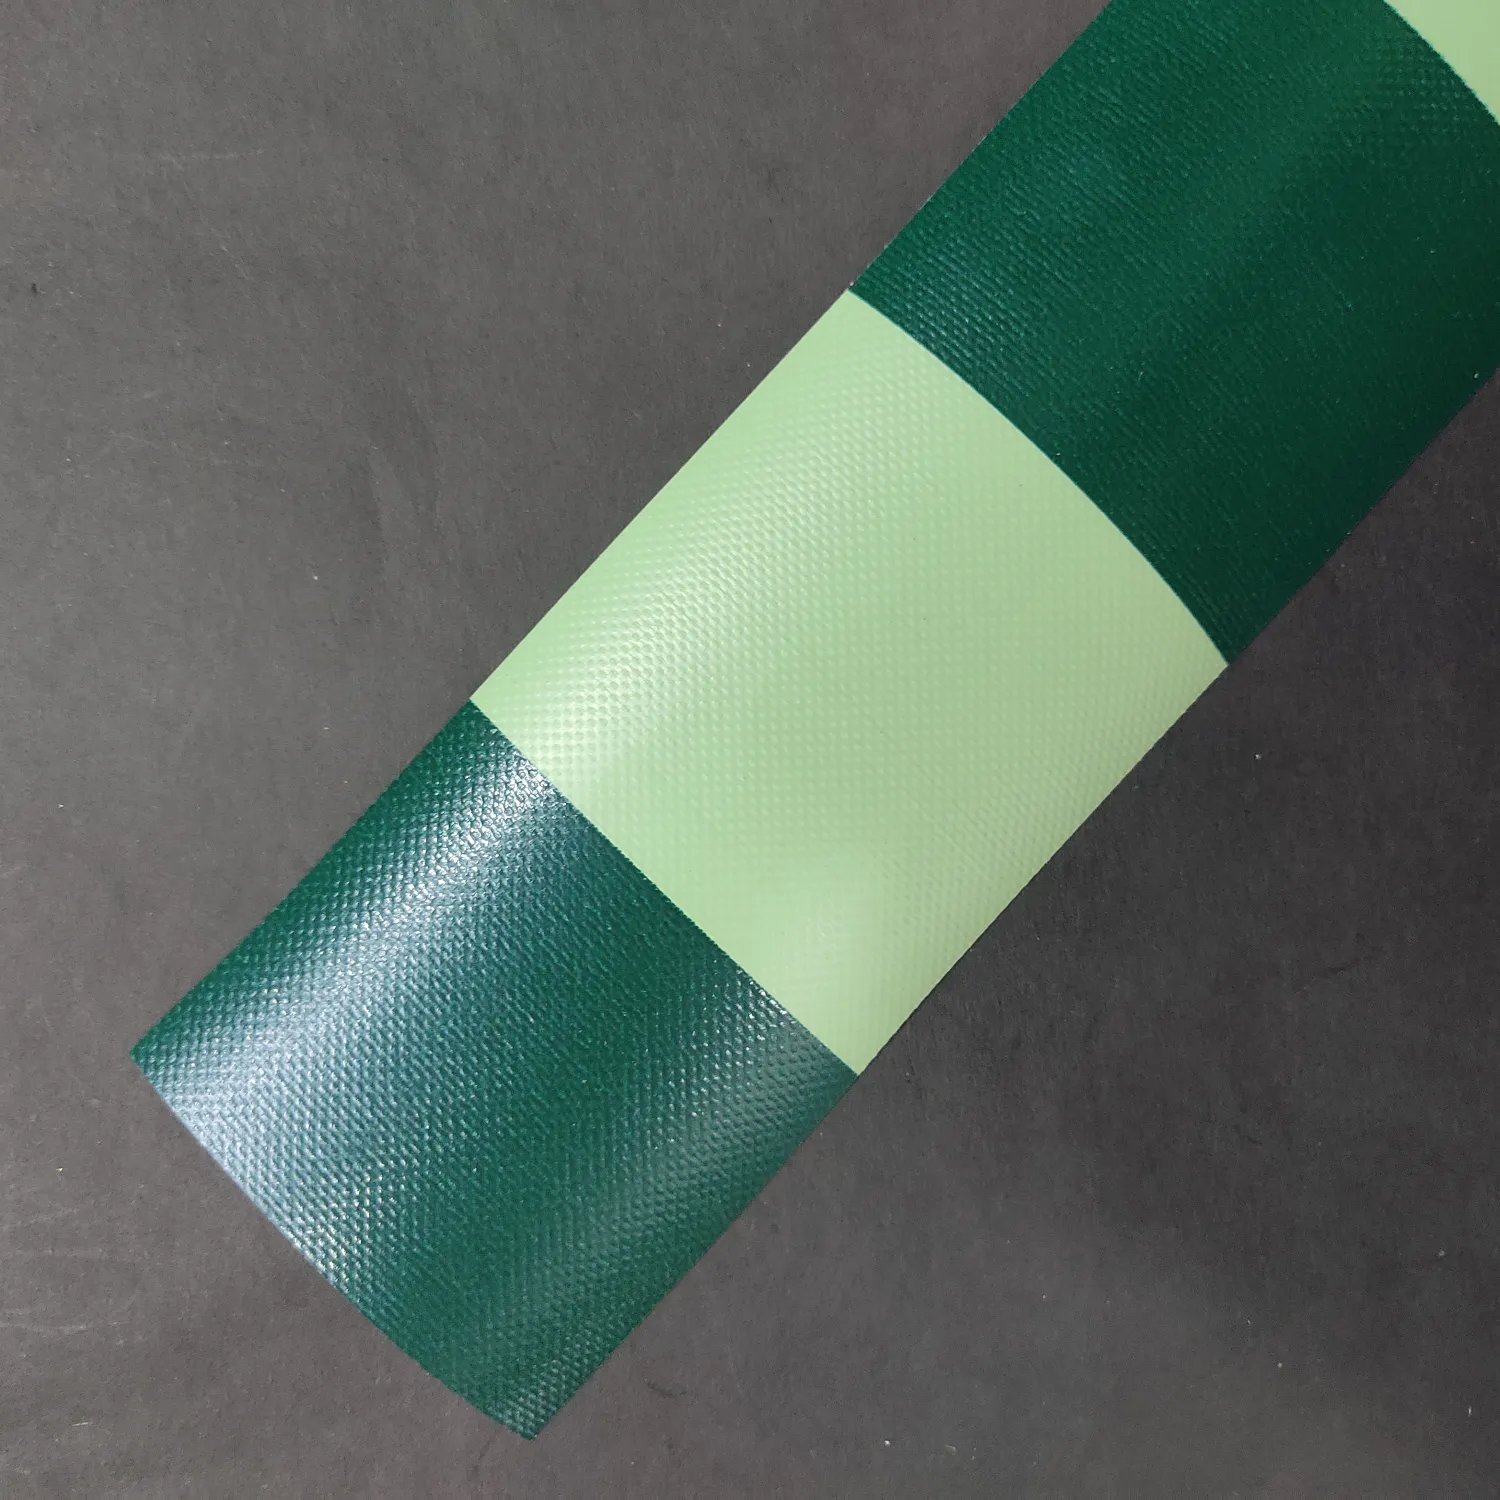 CSC PVC Fabric back(m.green,d.green)